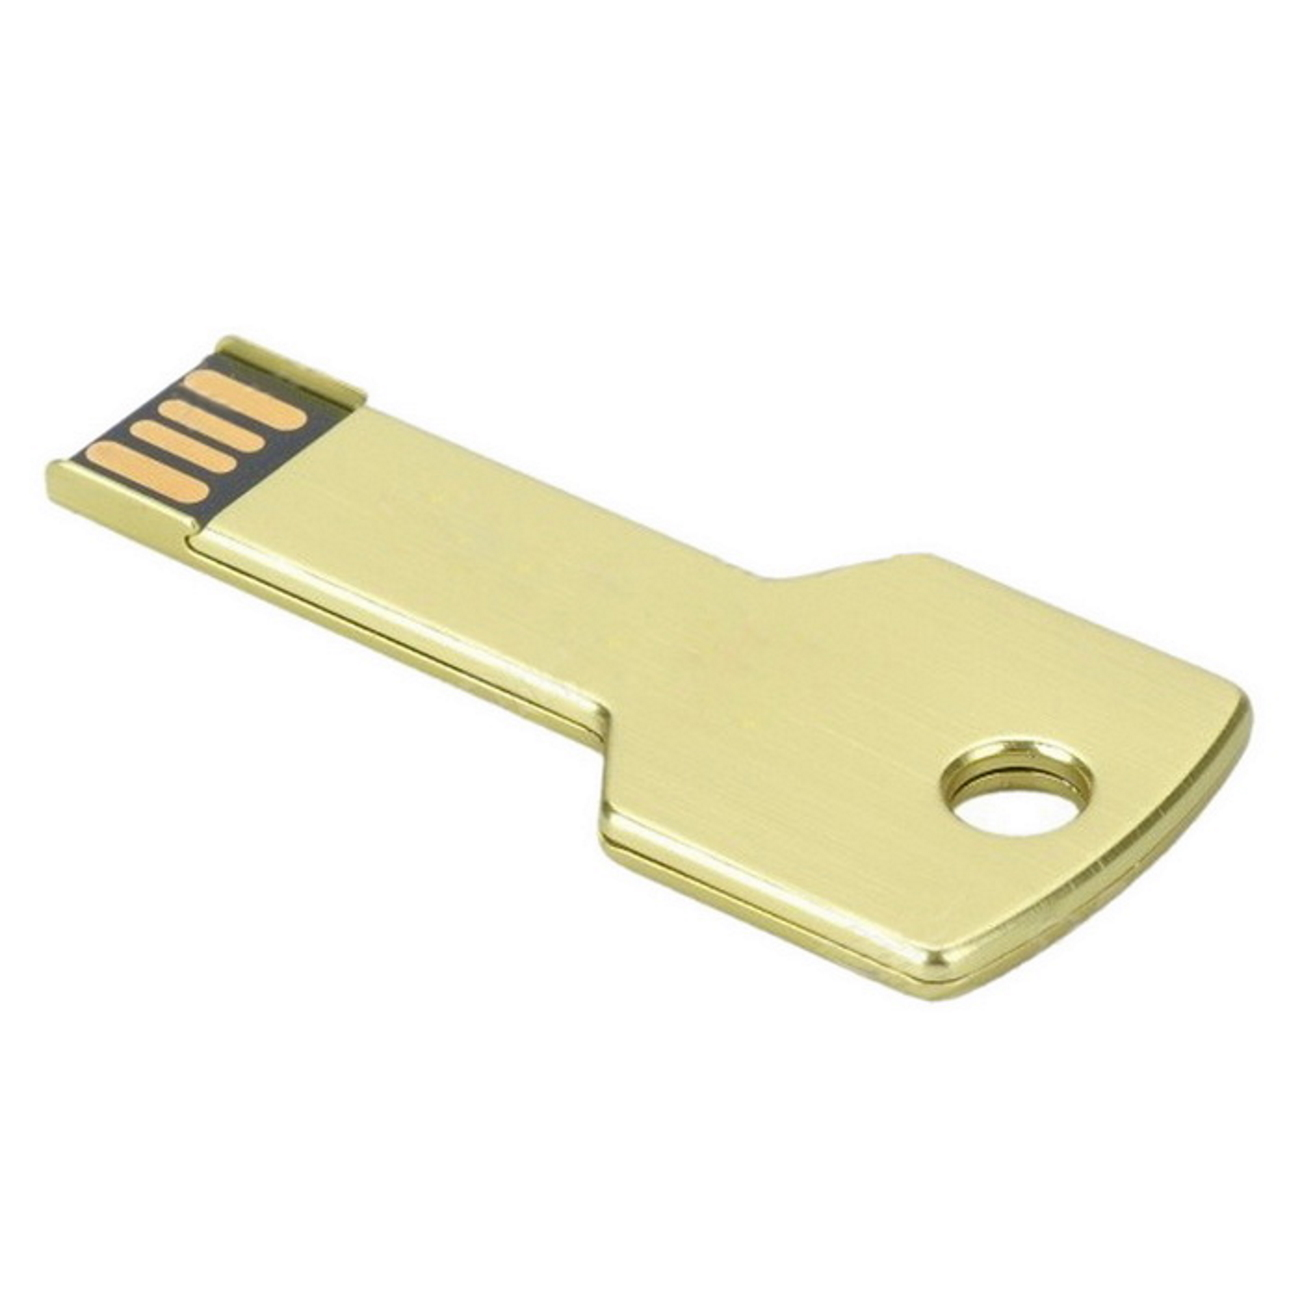 Key Gold GB) 2 USB-Stick USB (Gold, 2GB GERMANY